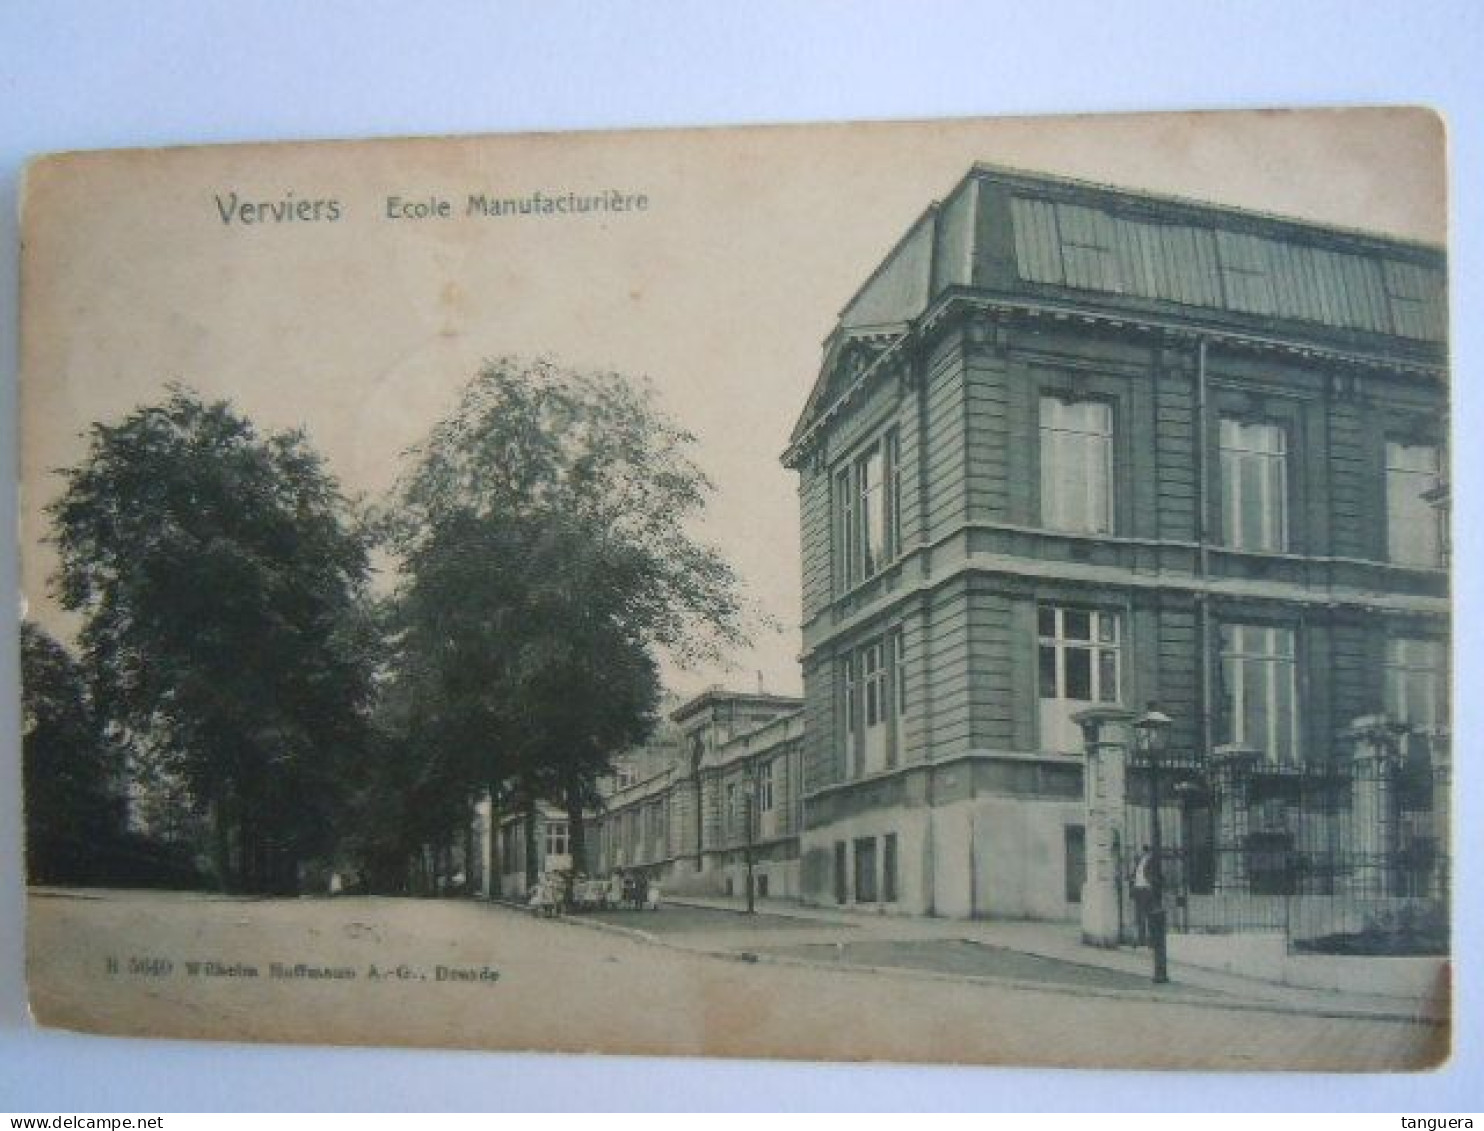 Verviers - Ecole Manufacturière B 5640 Wilhelm Hoffmann Dresde Circulée 1907 - Chênée - Verviers